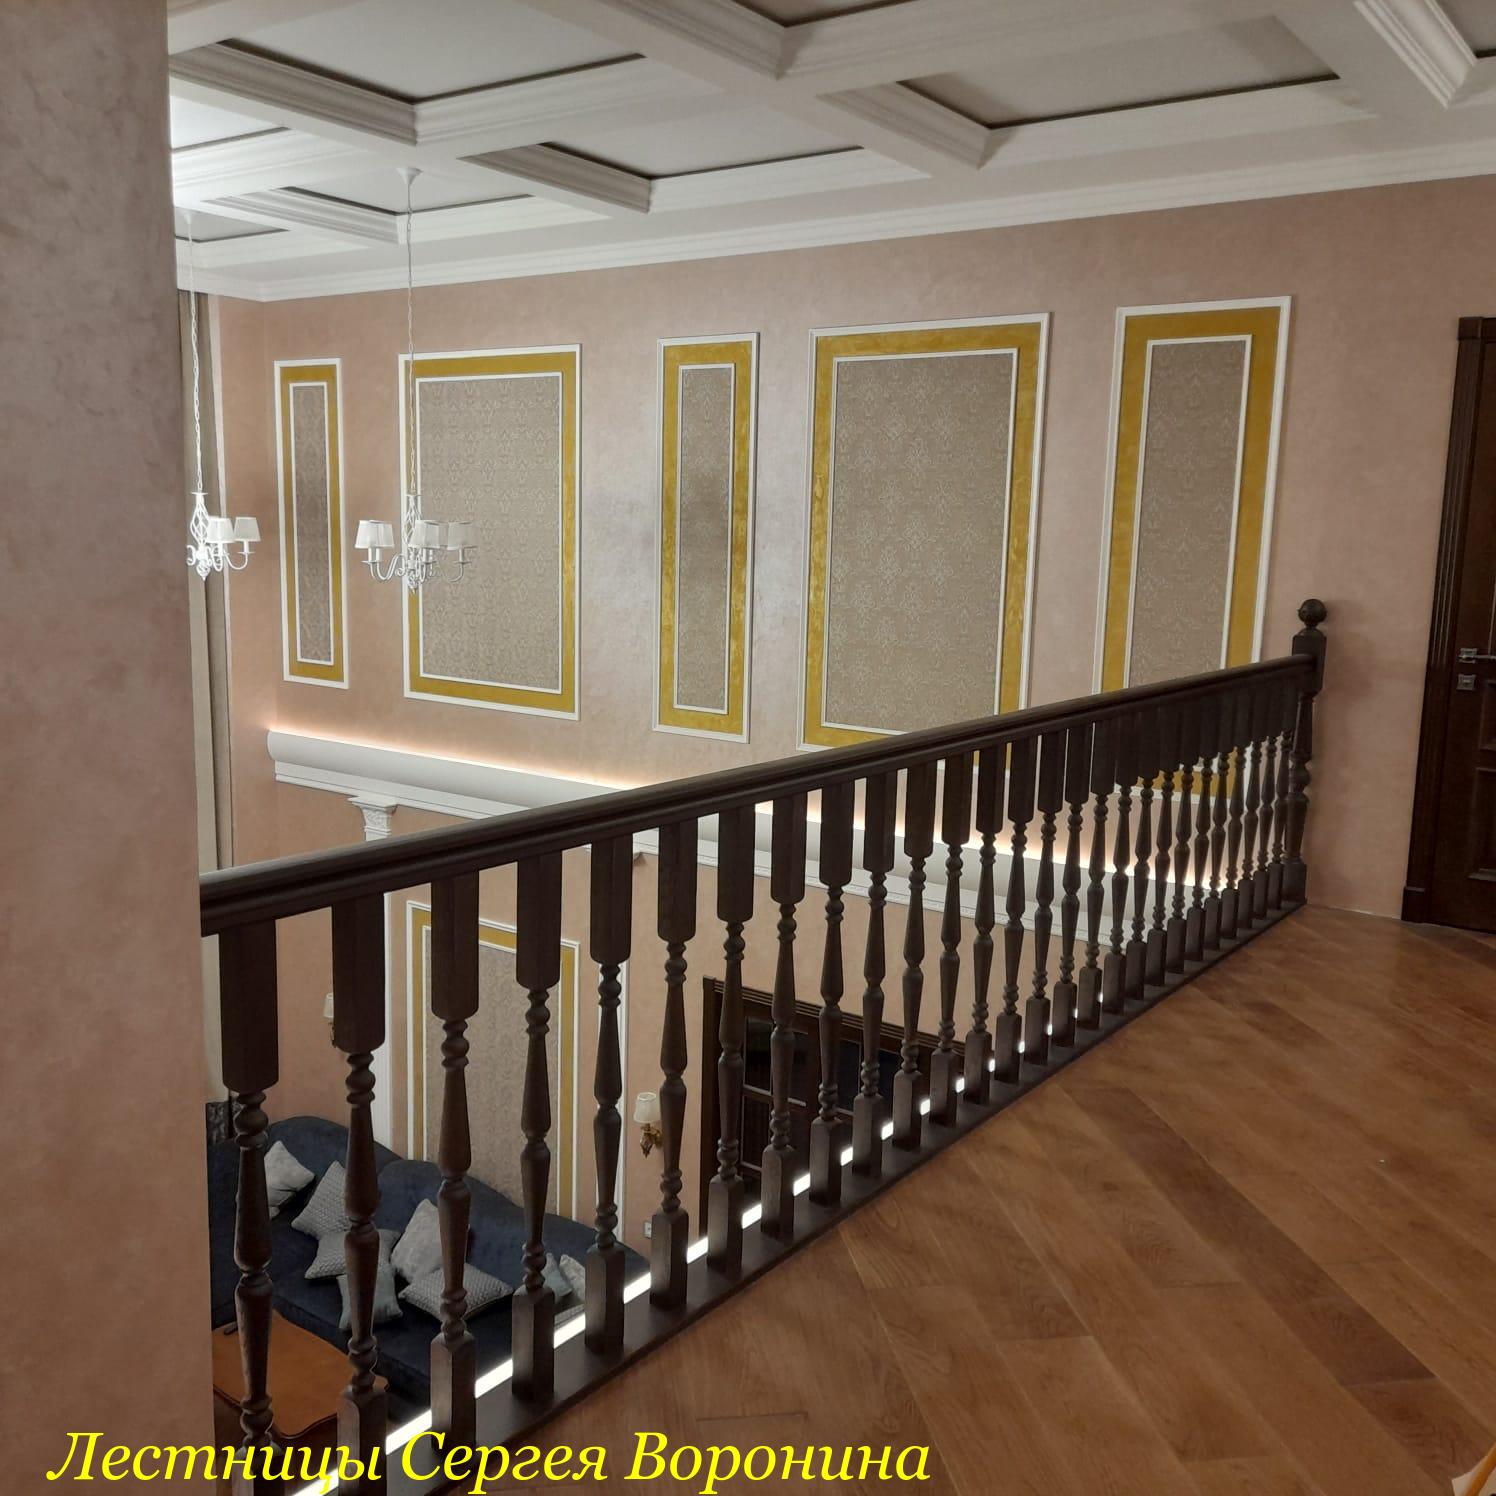 Межэтажные Лестницы Сергея Воронина, Воронеж - Лестница дома